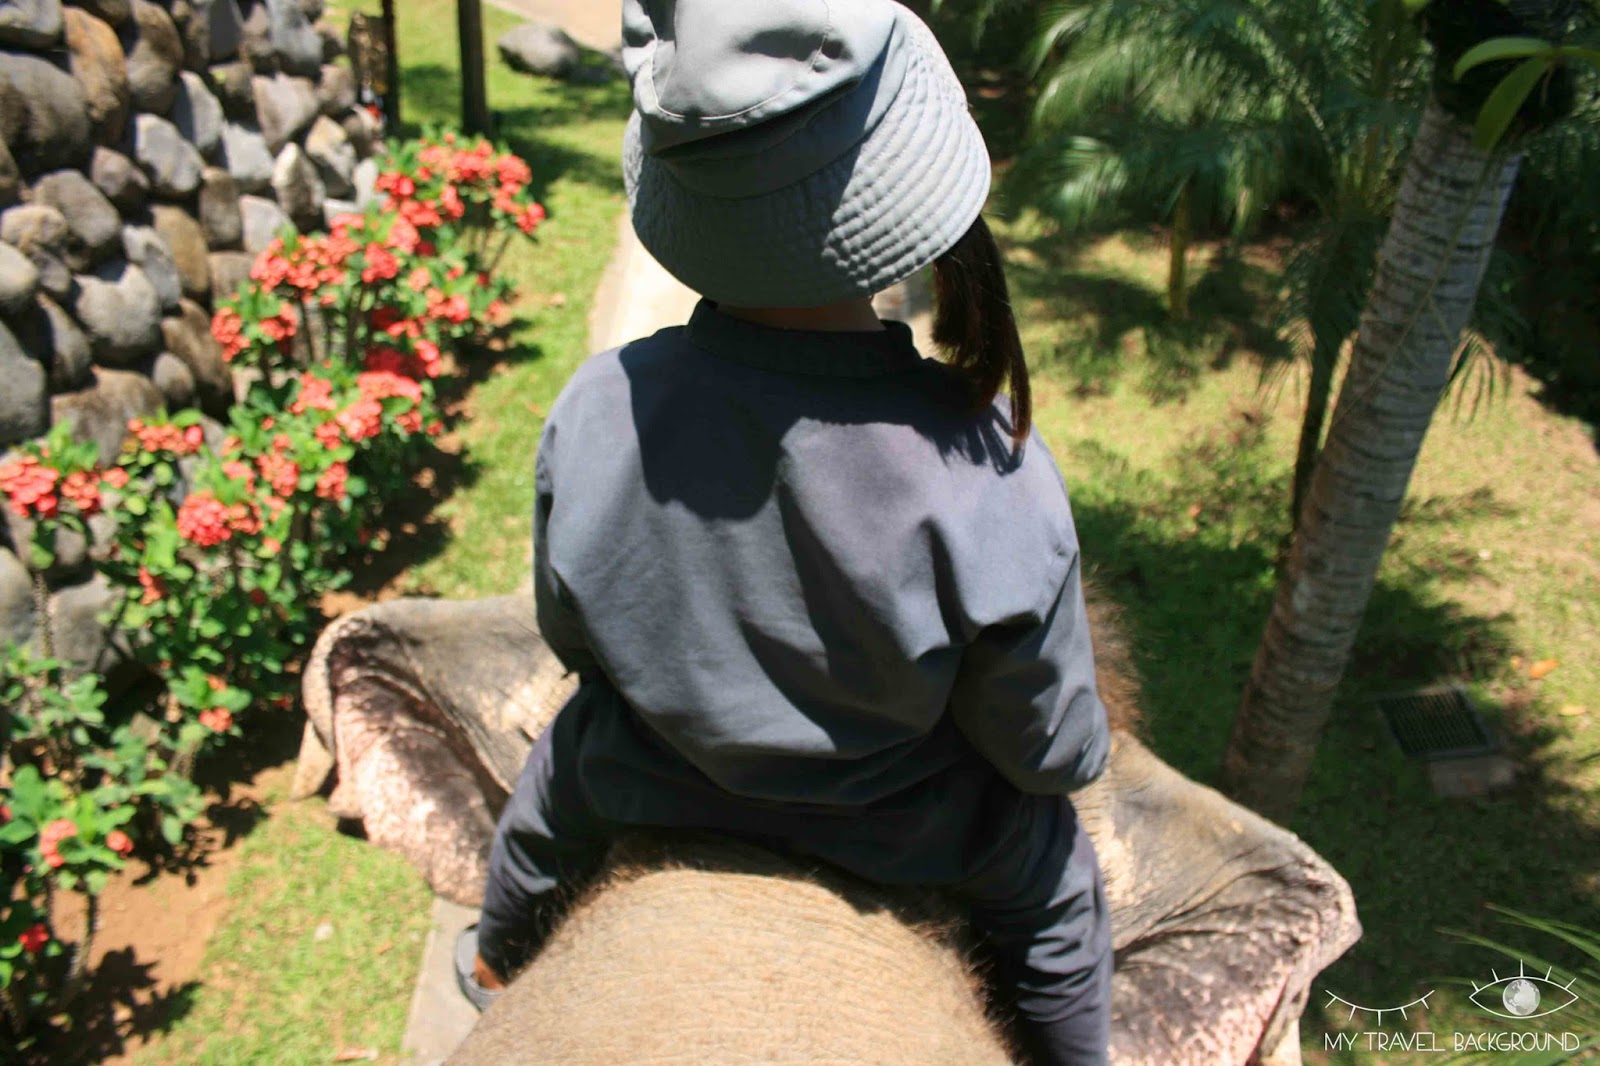 My Travel Background : 10 choses à faire à Bali - Se promener à dos d'éléphant